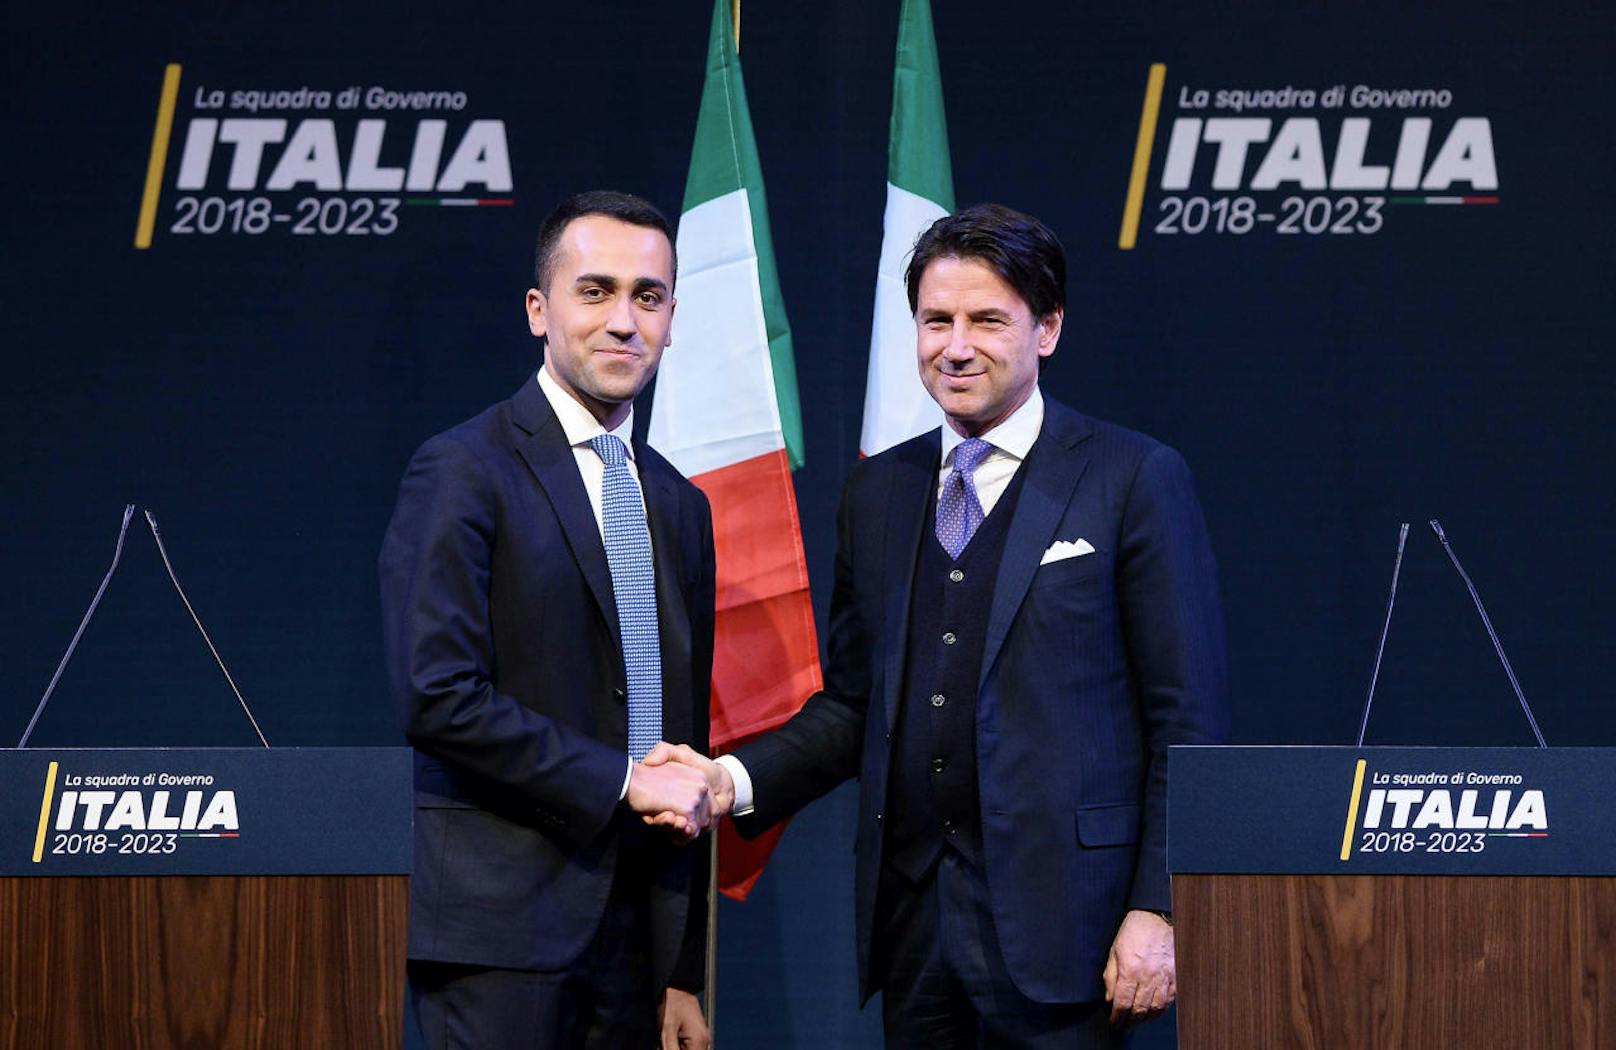 Luigi di Maio (l.), Chef der 5 Sterne Partei, mit seinem Wunschkandidaten für das Amt des Premiers, Giuseppe Conte